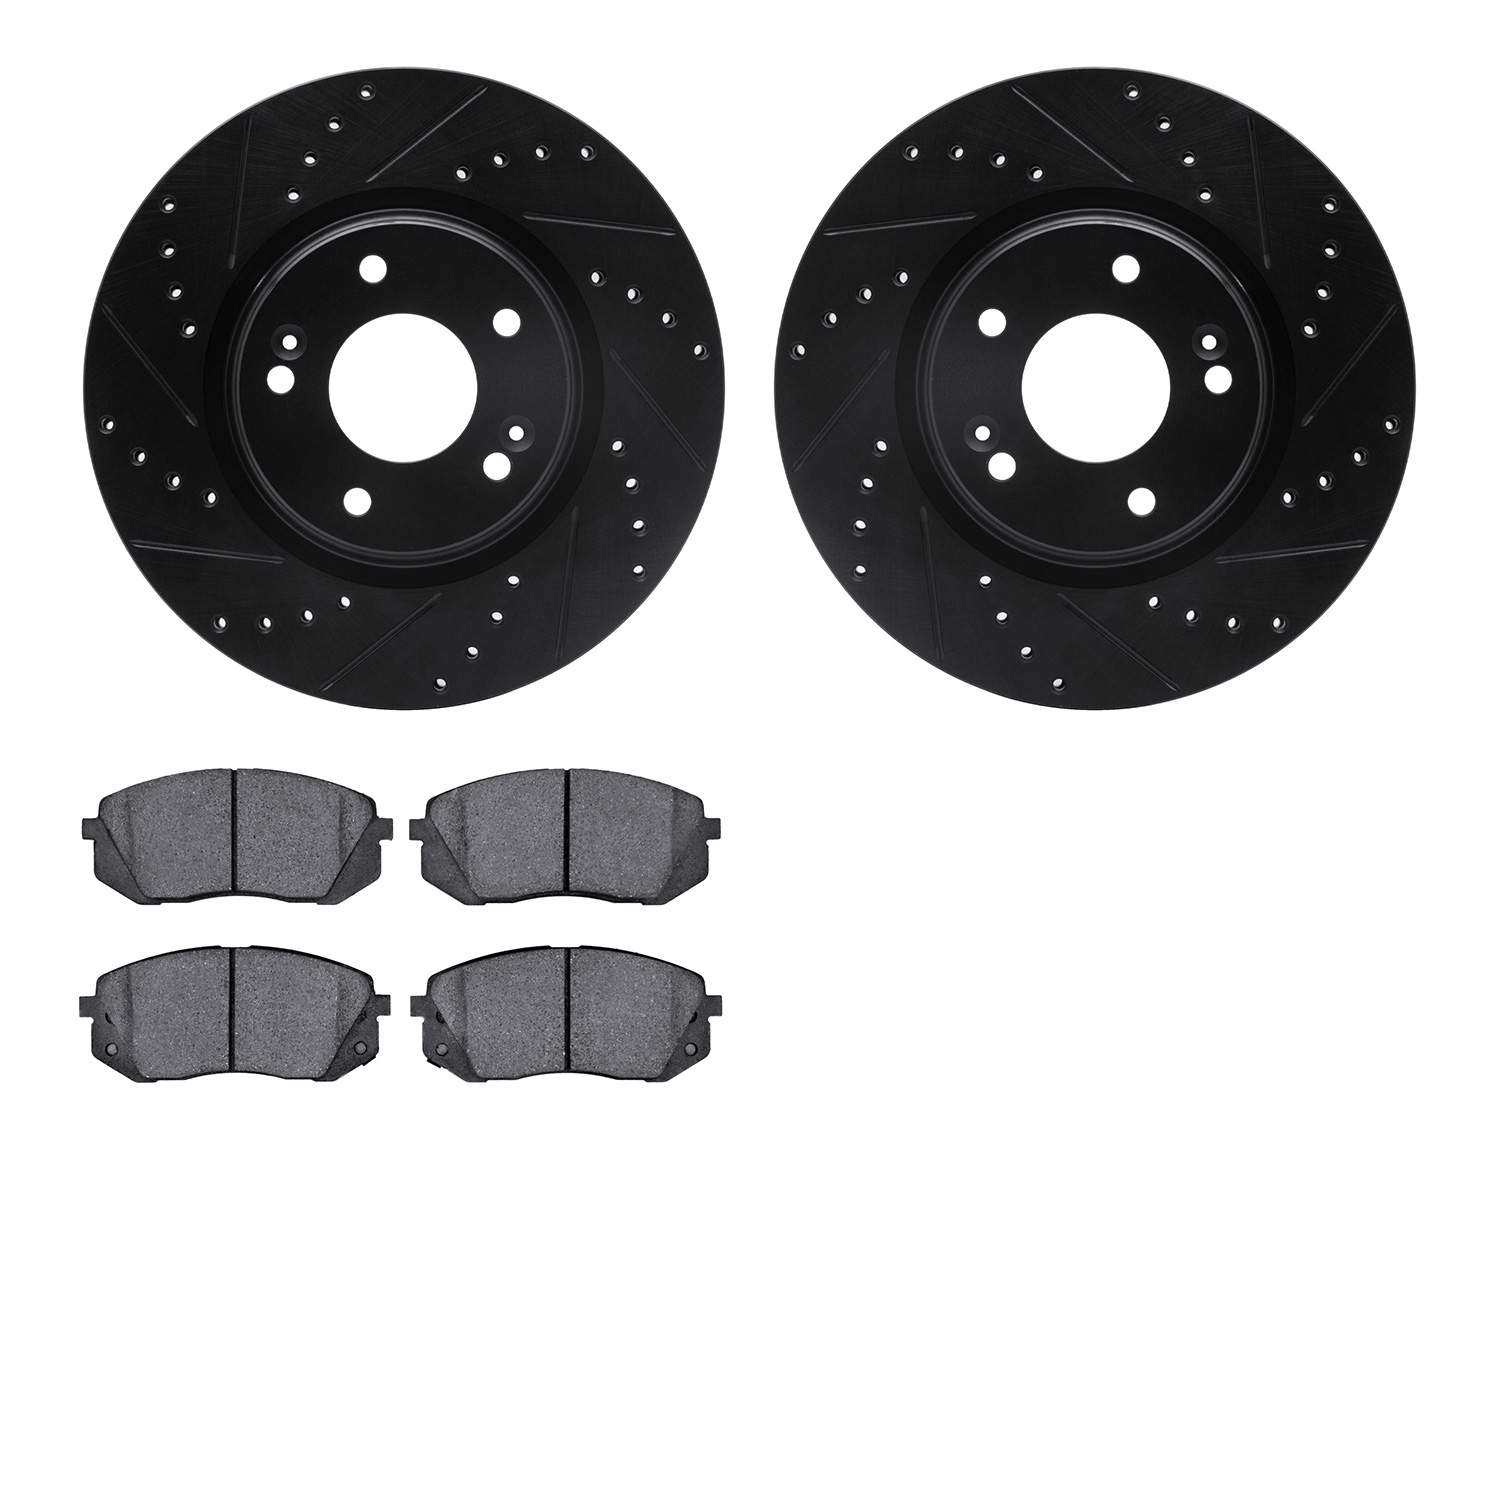 8302-03095 Drilled/Slotted Brake Rotors with 3000-Series Ceramic Brake Pads Kit [Black], Fits Select Kia/Hyundai/Genesis, Positi